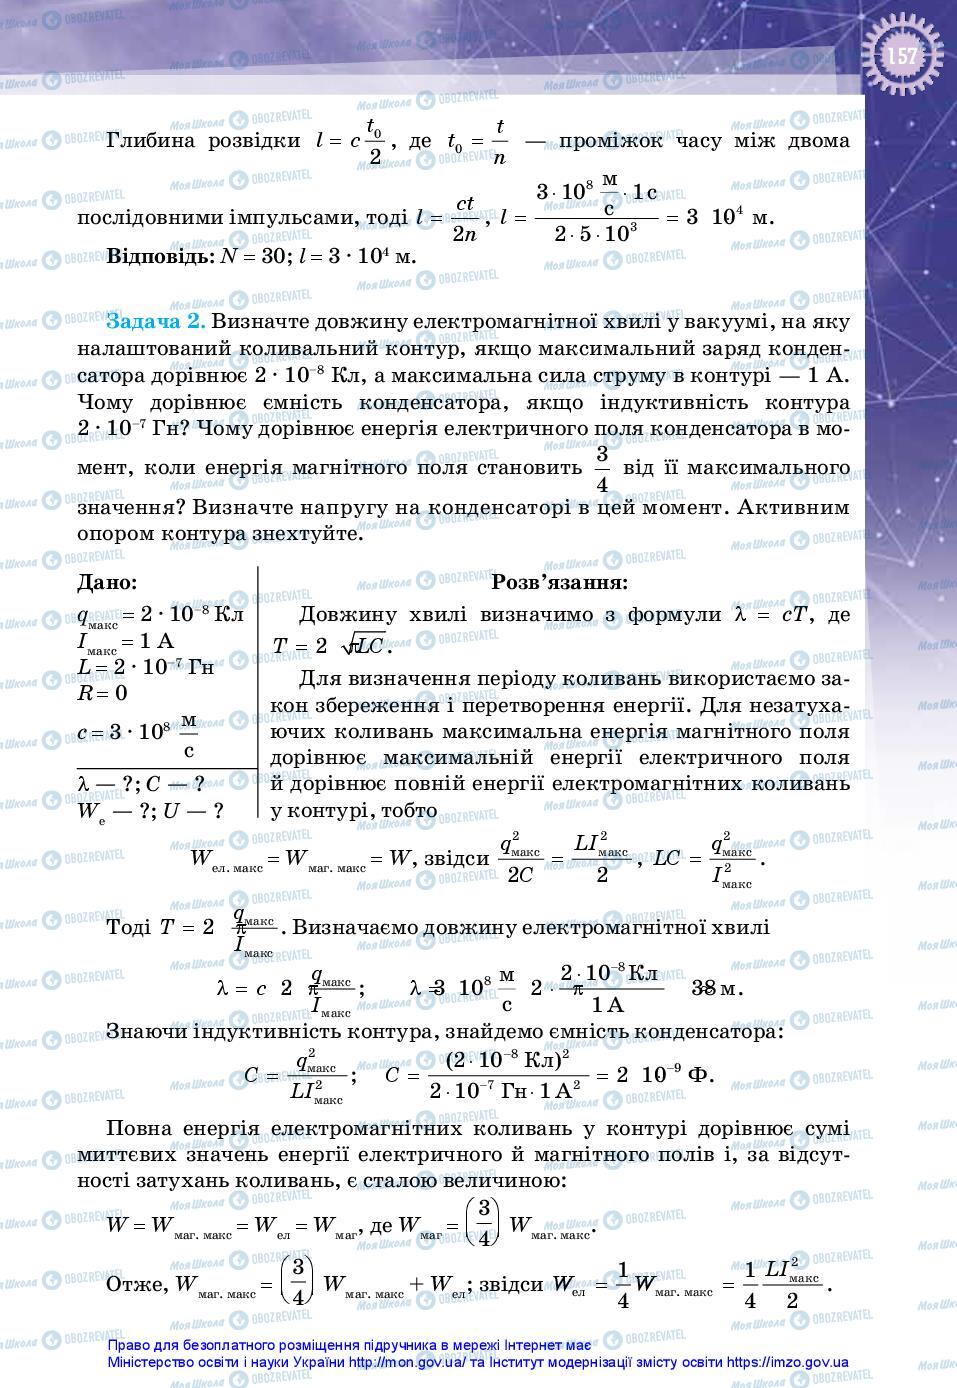 Учебники Физика 11 класс страница 157